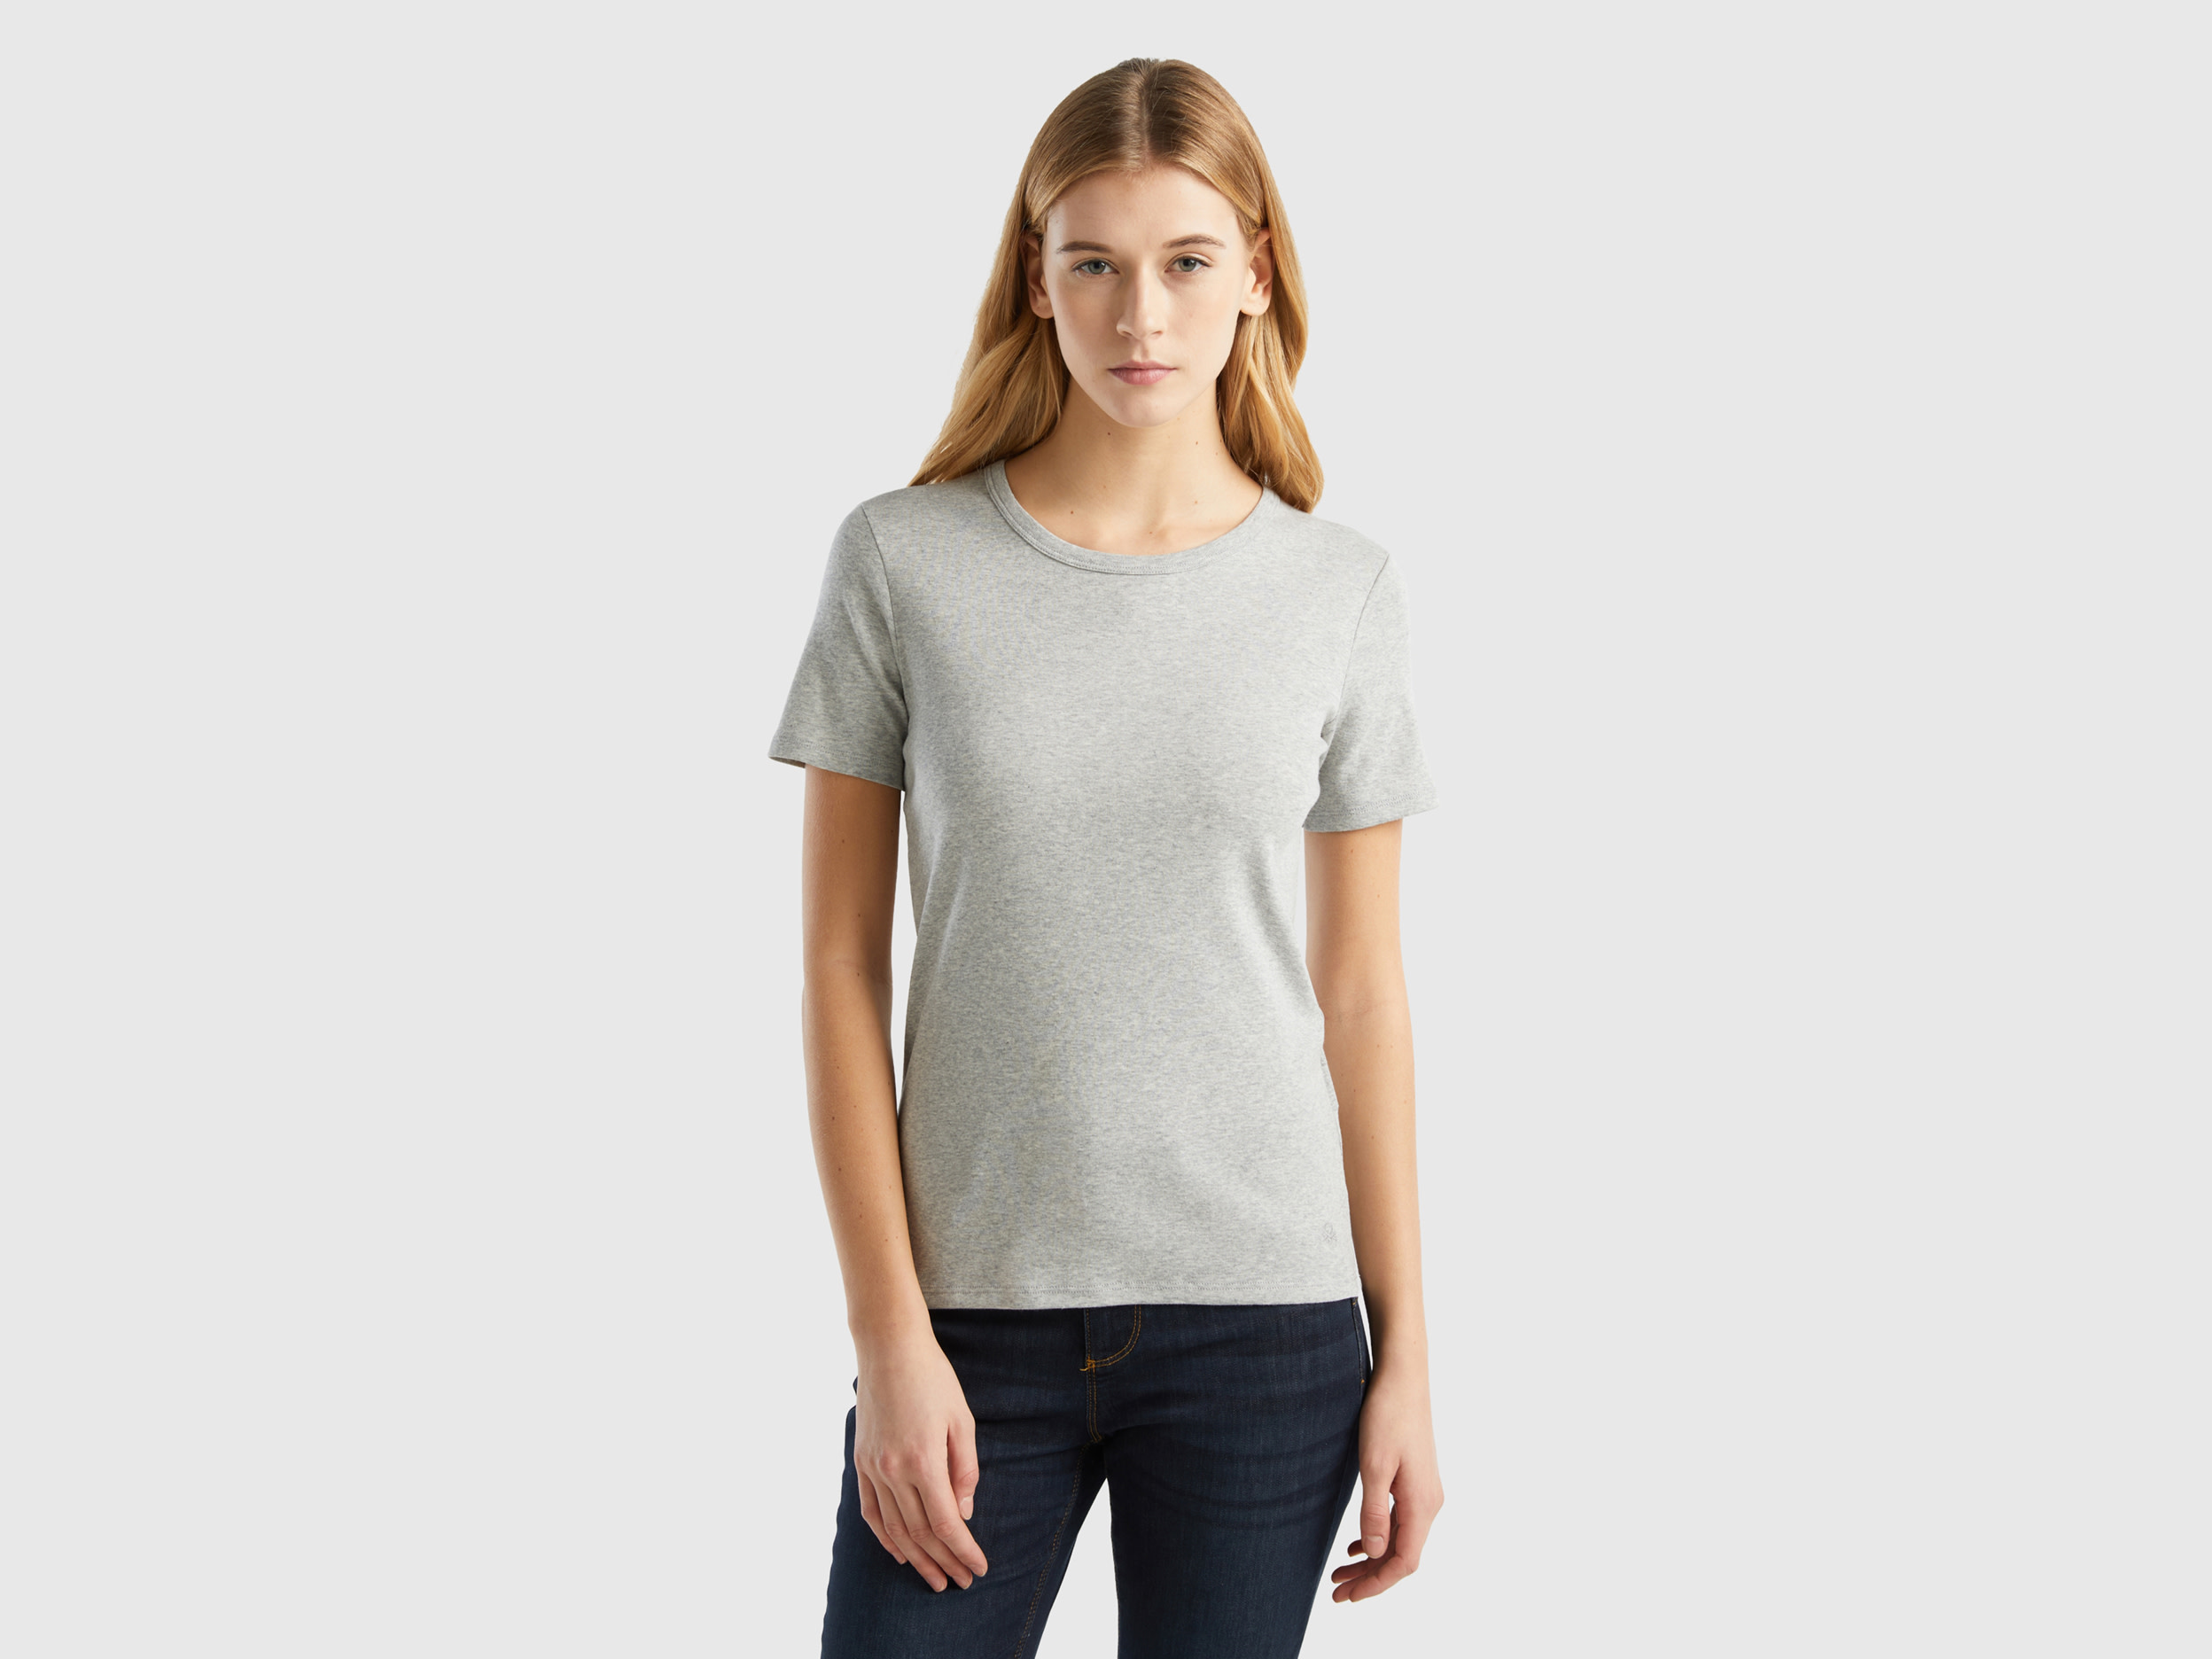 Benetton, Long Fiber Cotton T-shirt, size XL, Light Gray, Women